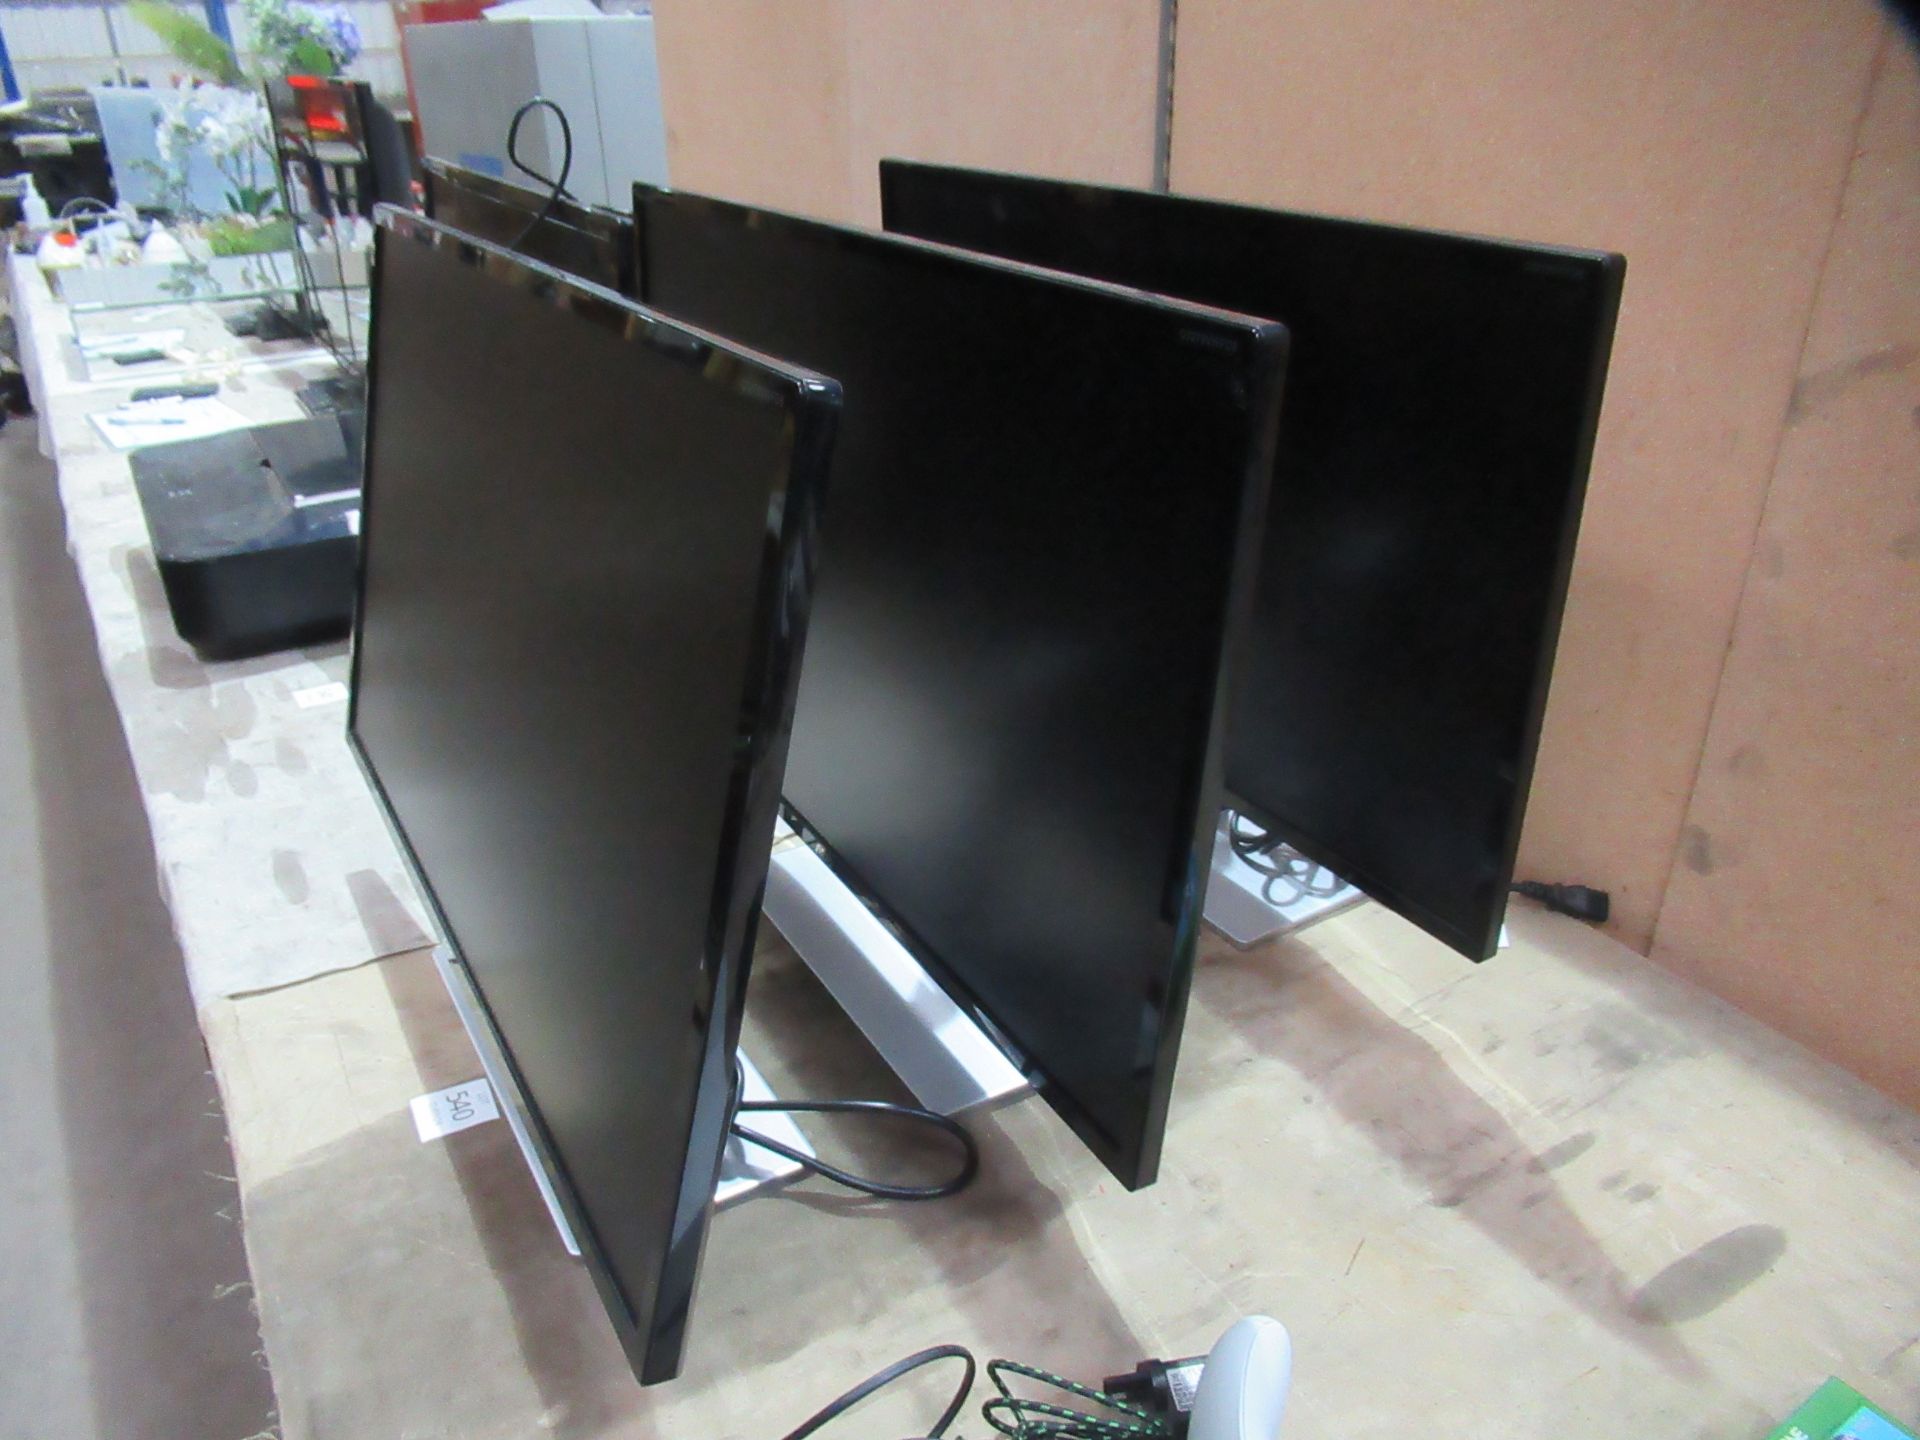 3x AOC LCD Monitors (LED Backlight) - Image 2 of 7